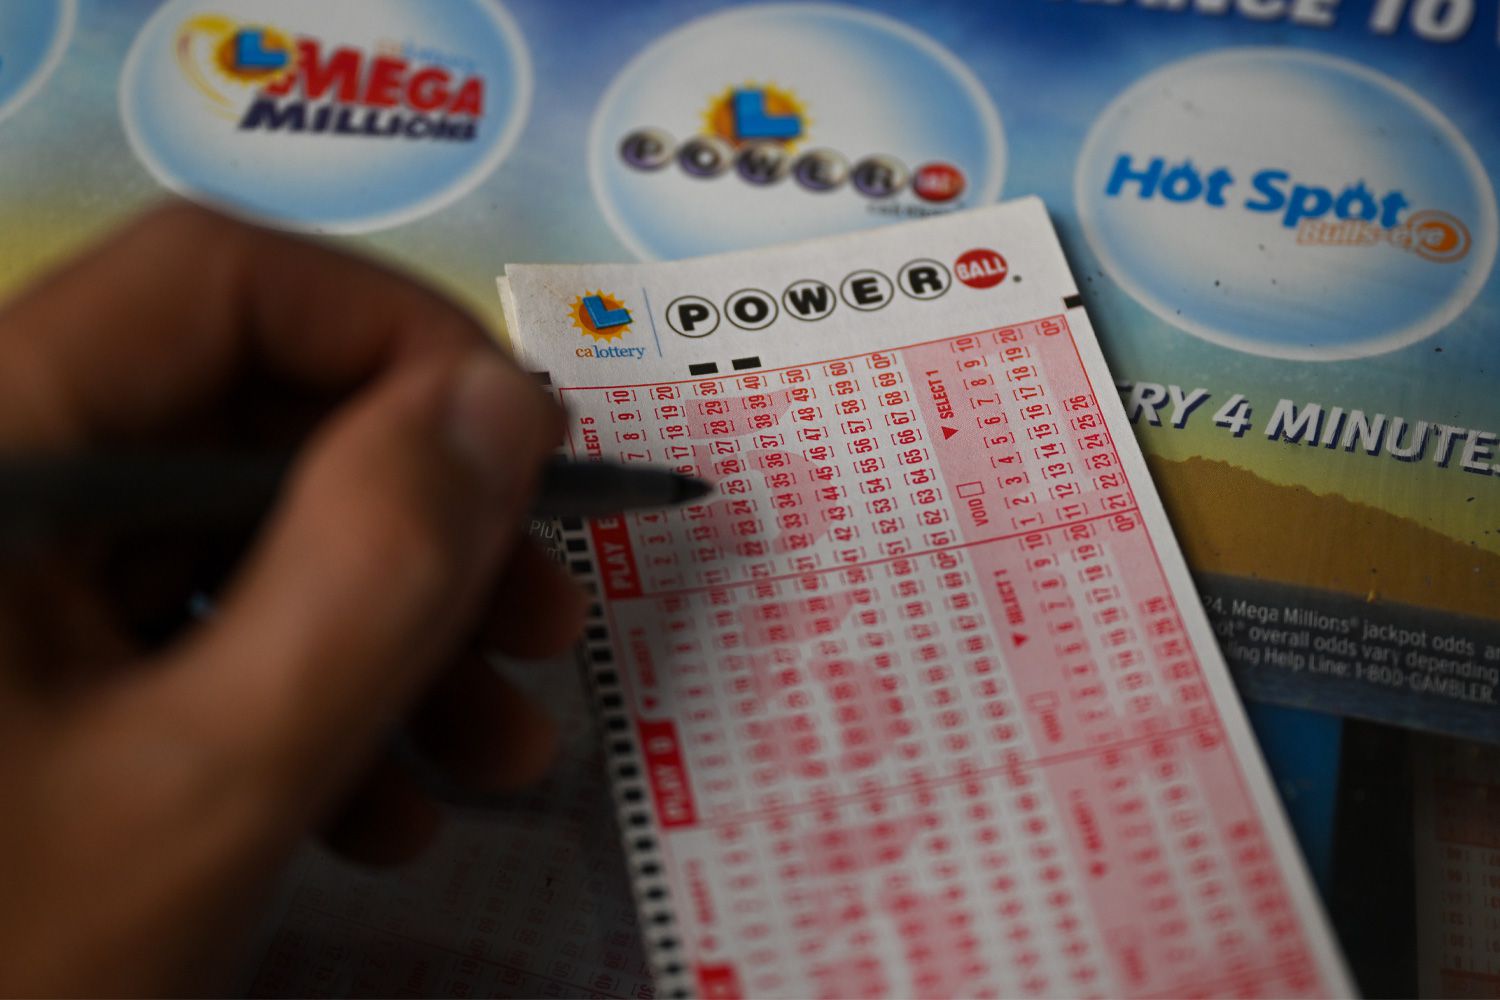 una persona gana 1 000 millones de dolares en la loteria el premio en la historia de ee uu laverdaddemonagas.com powerball 071623 1 31864b09f1984677947e7c9cde8b659c